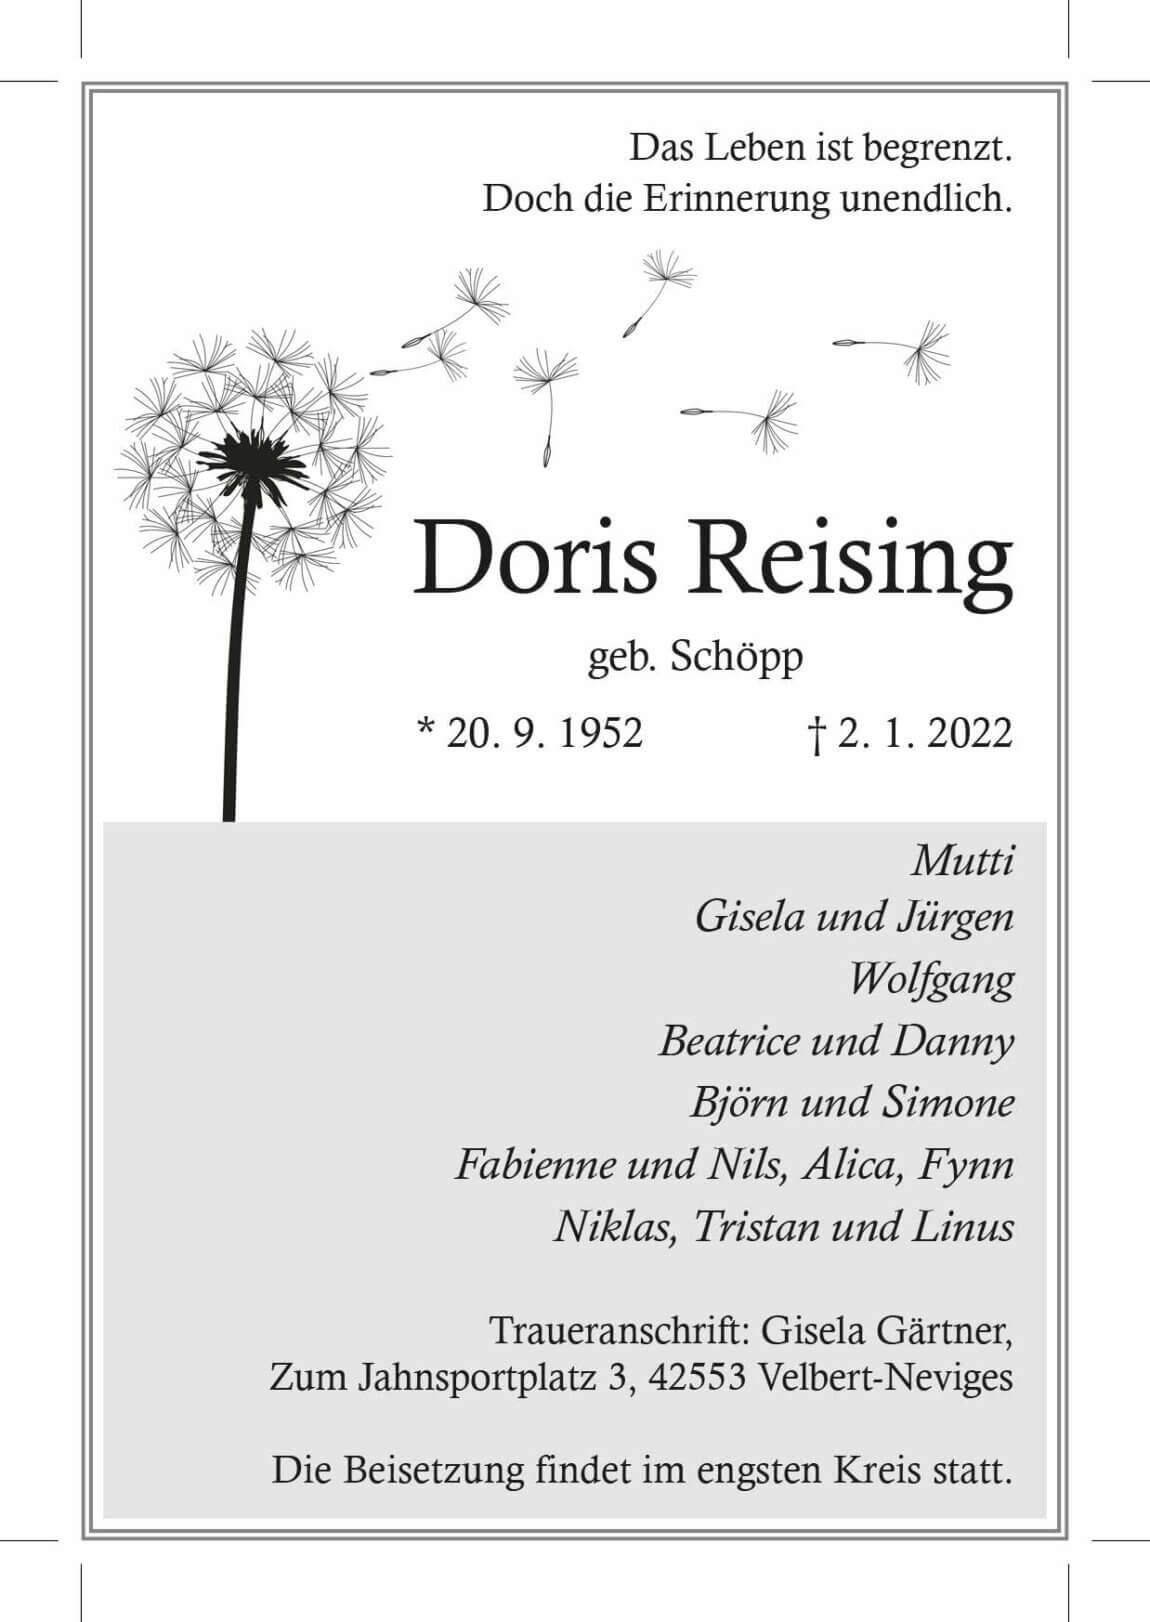 08.01.2022_Reising-Doris.jpg